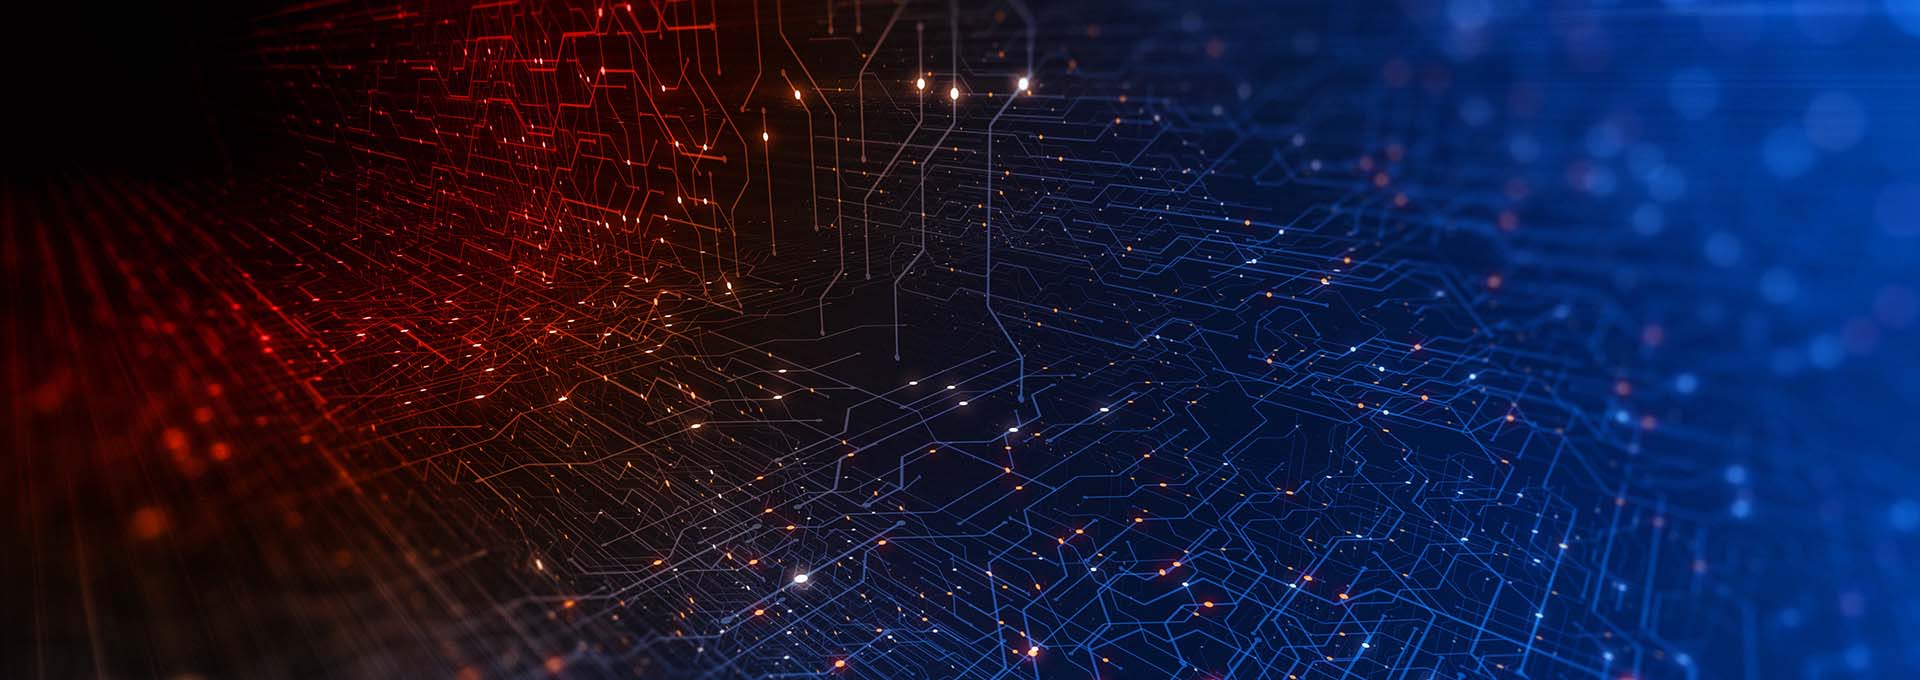 Una red de puntos conectados iluminados en rojo y azul que simbolizan el mundo digital de nuestro software de adaptación Oasisnxt.